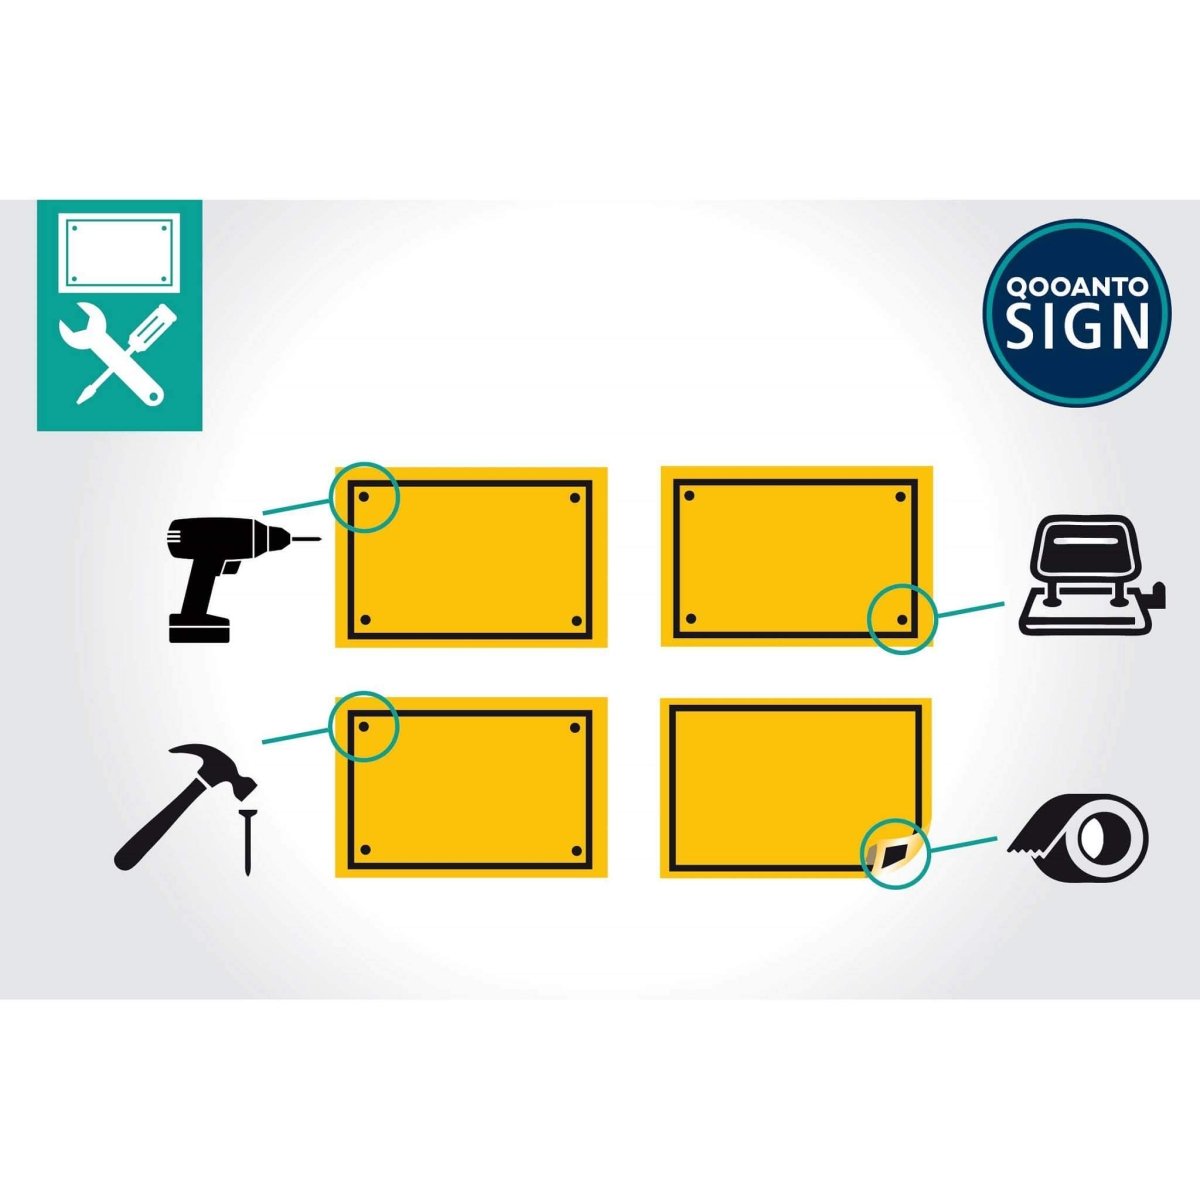 Privatgelände Parkieren Verboten! Widerrechtlich Parkierte Fahrzeuge Werden Kostenpflichtig Entfernt Schild aus Alu-Verbund mit UV-Schutz - QOOANTO-SIGN